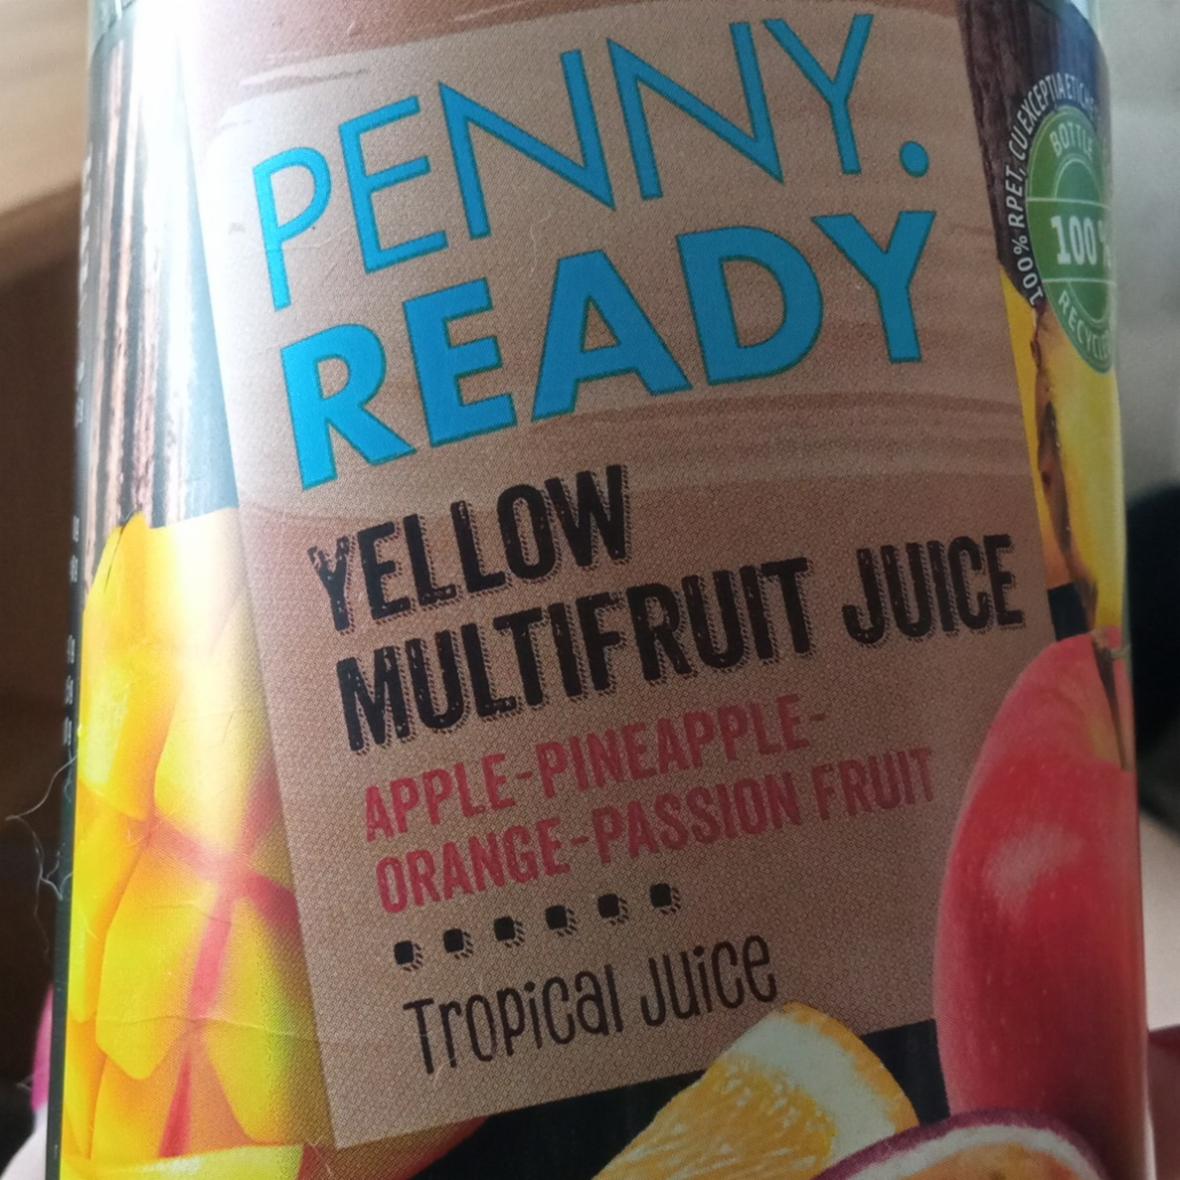 Fotografie - Yellow multifruit juice Penny READY